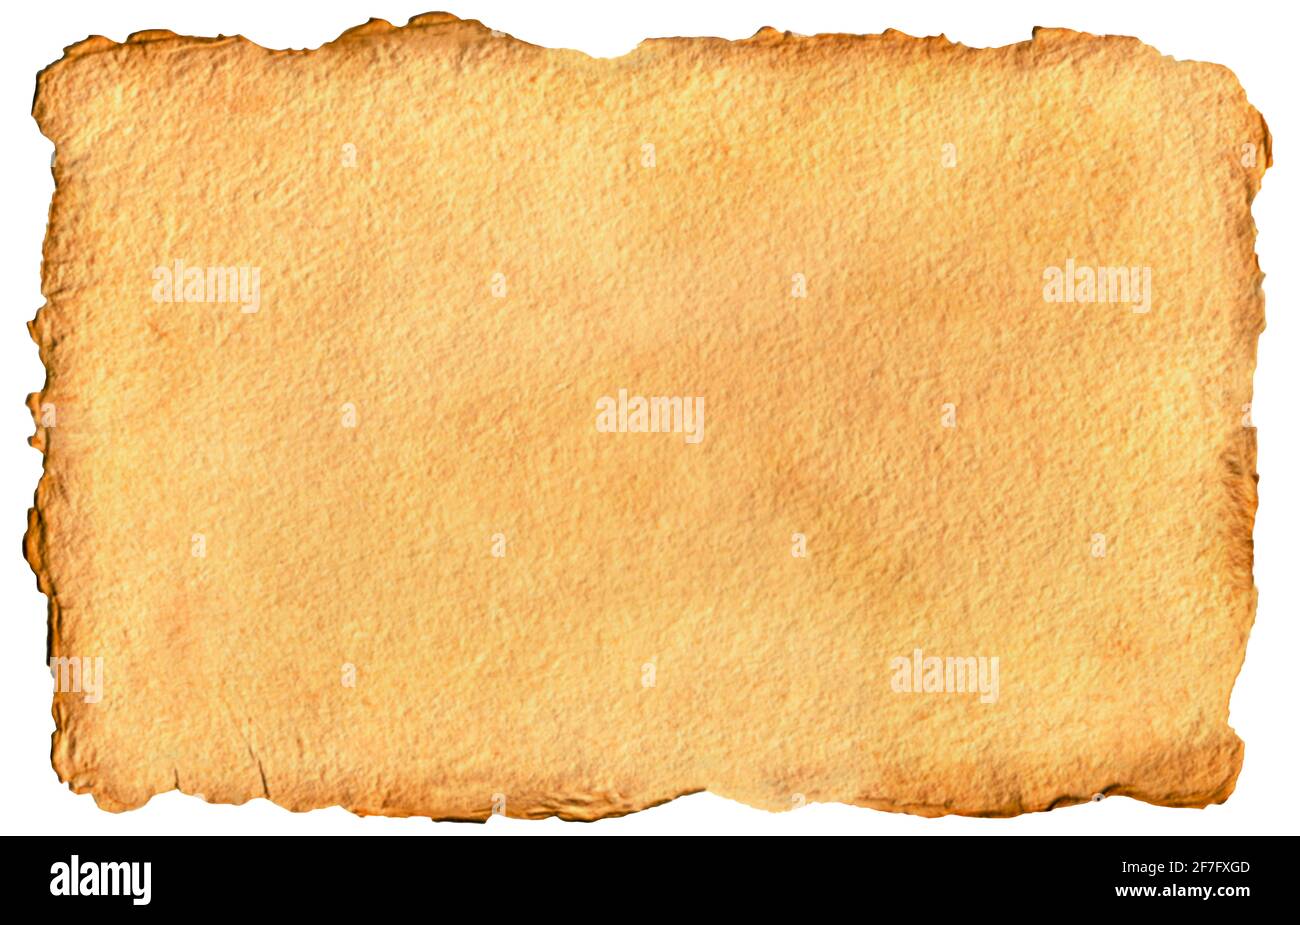 Papier papyrus parchemin vieux papier vintage fait à la main jaune brun avec bordure de structure plus sombre motif inégal style rétro en chabby chic maquette mise en page vers le haut Banque D'Images